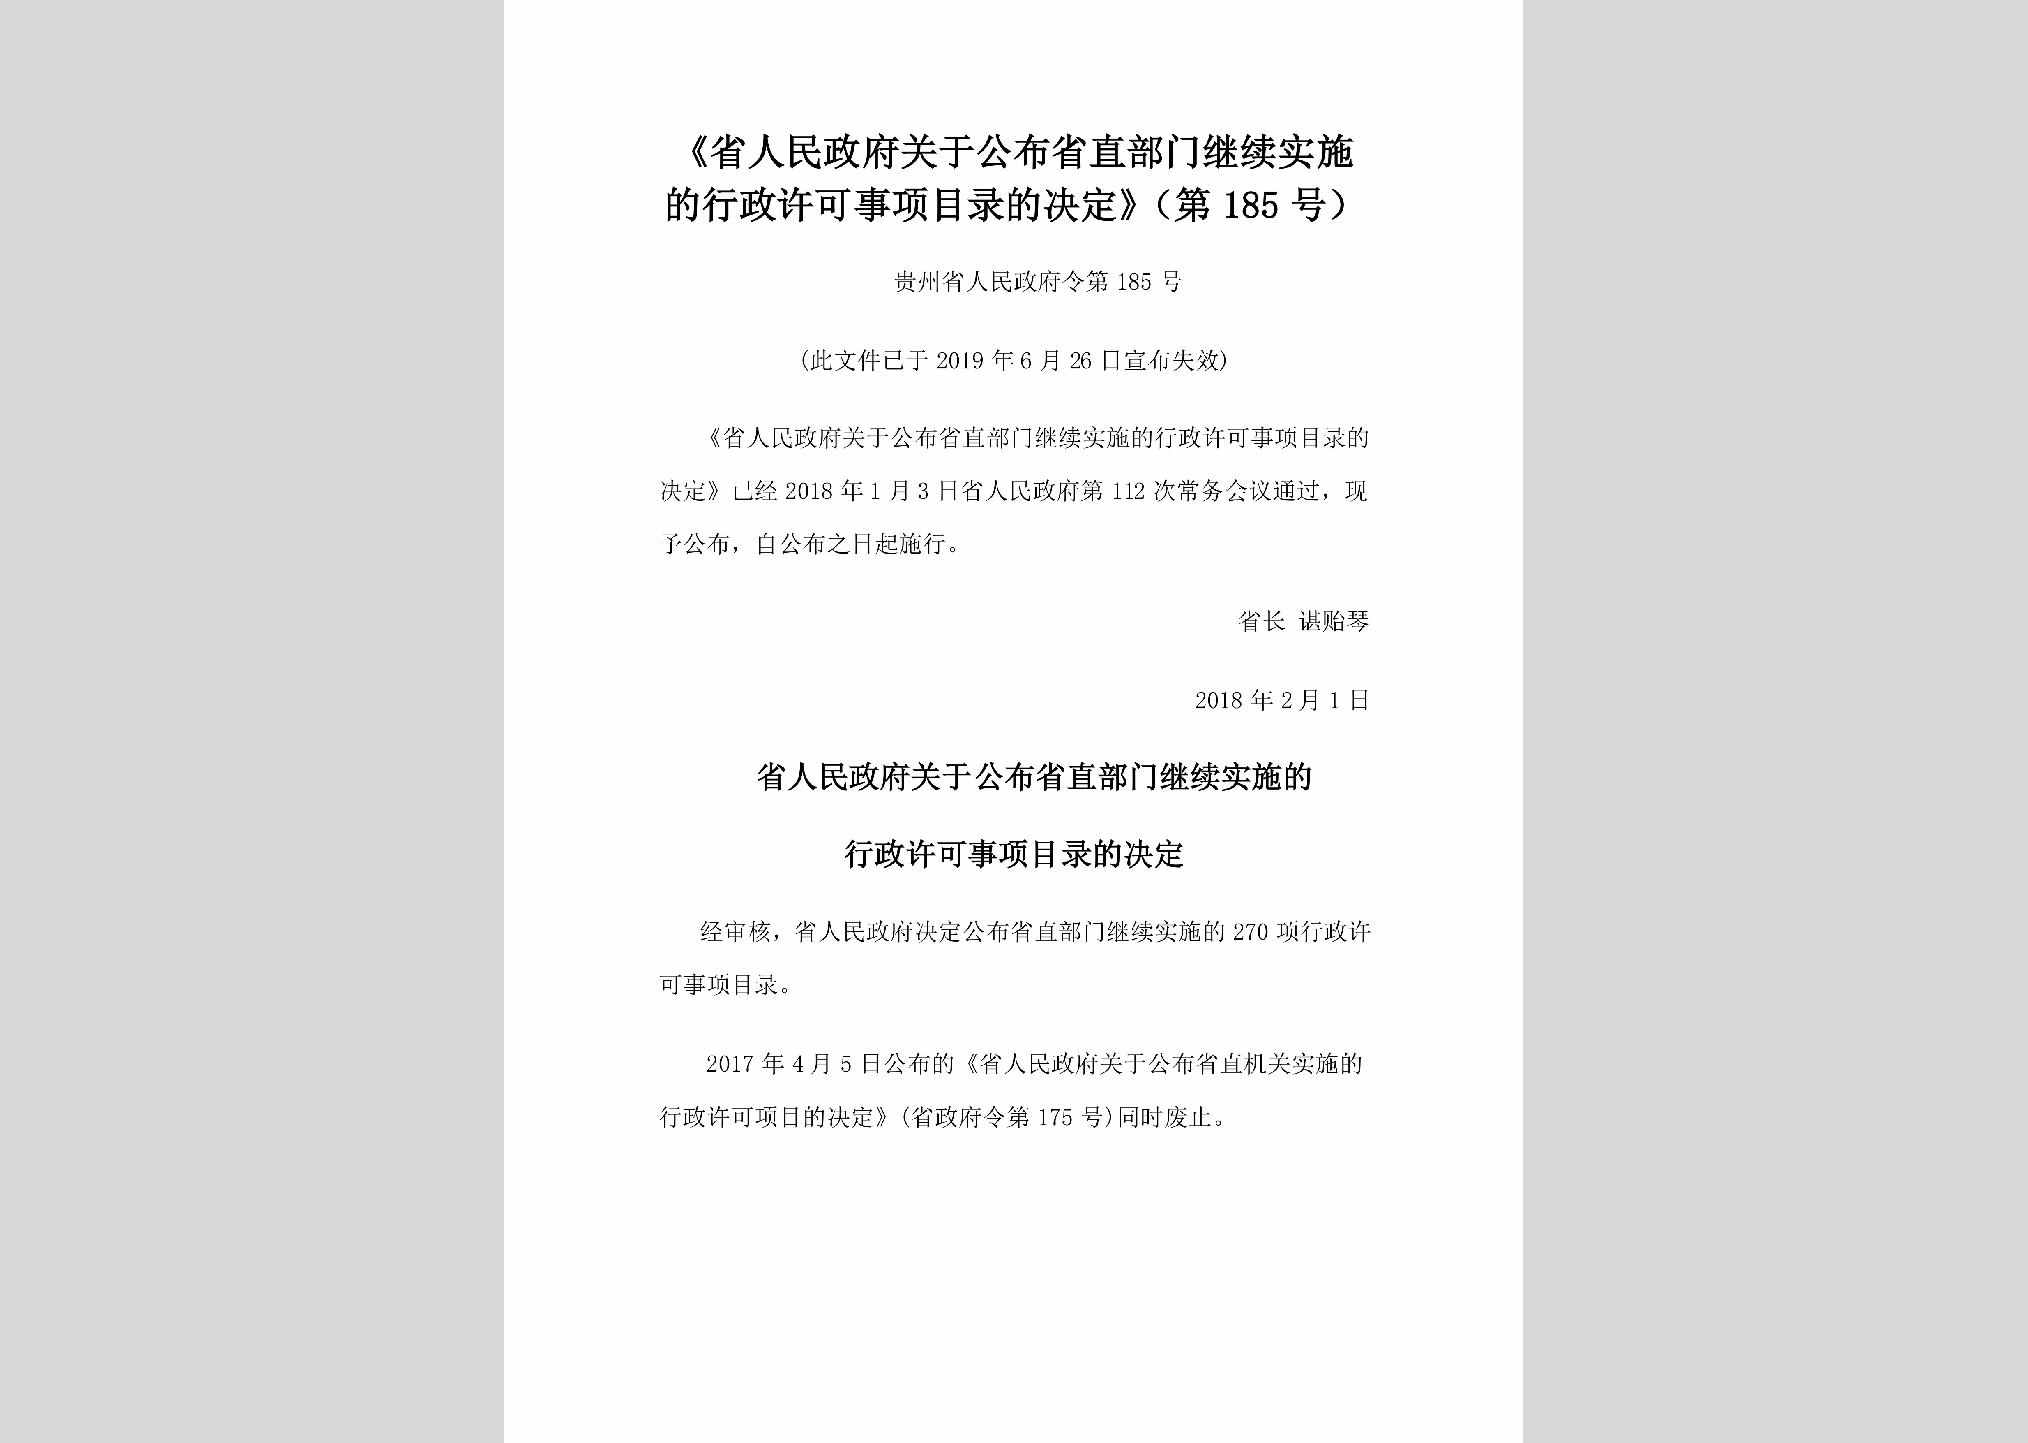 贵州省人民政府令第185号：《省人民政府关于公布省直部门继续实施的行政许可事项目录的决定》